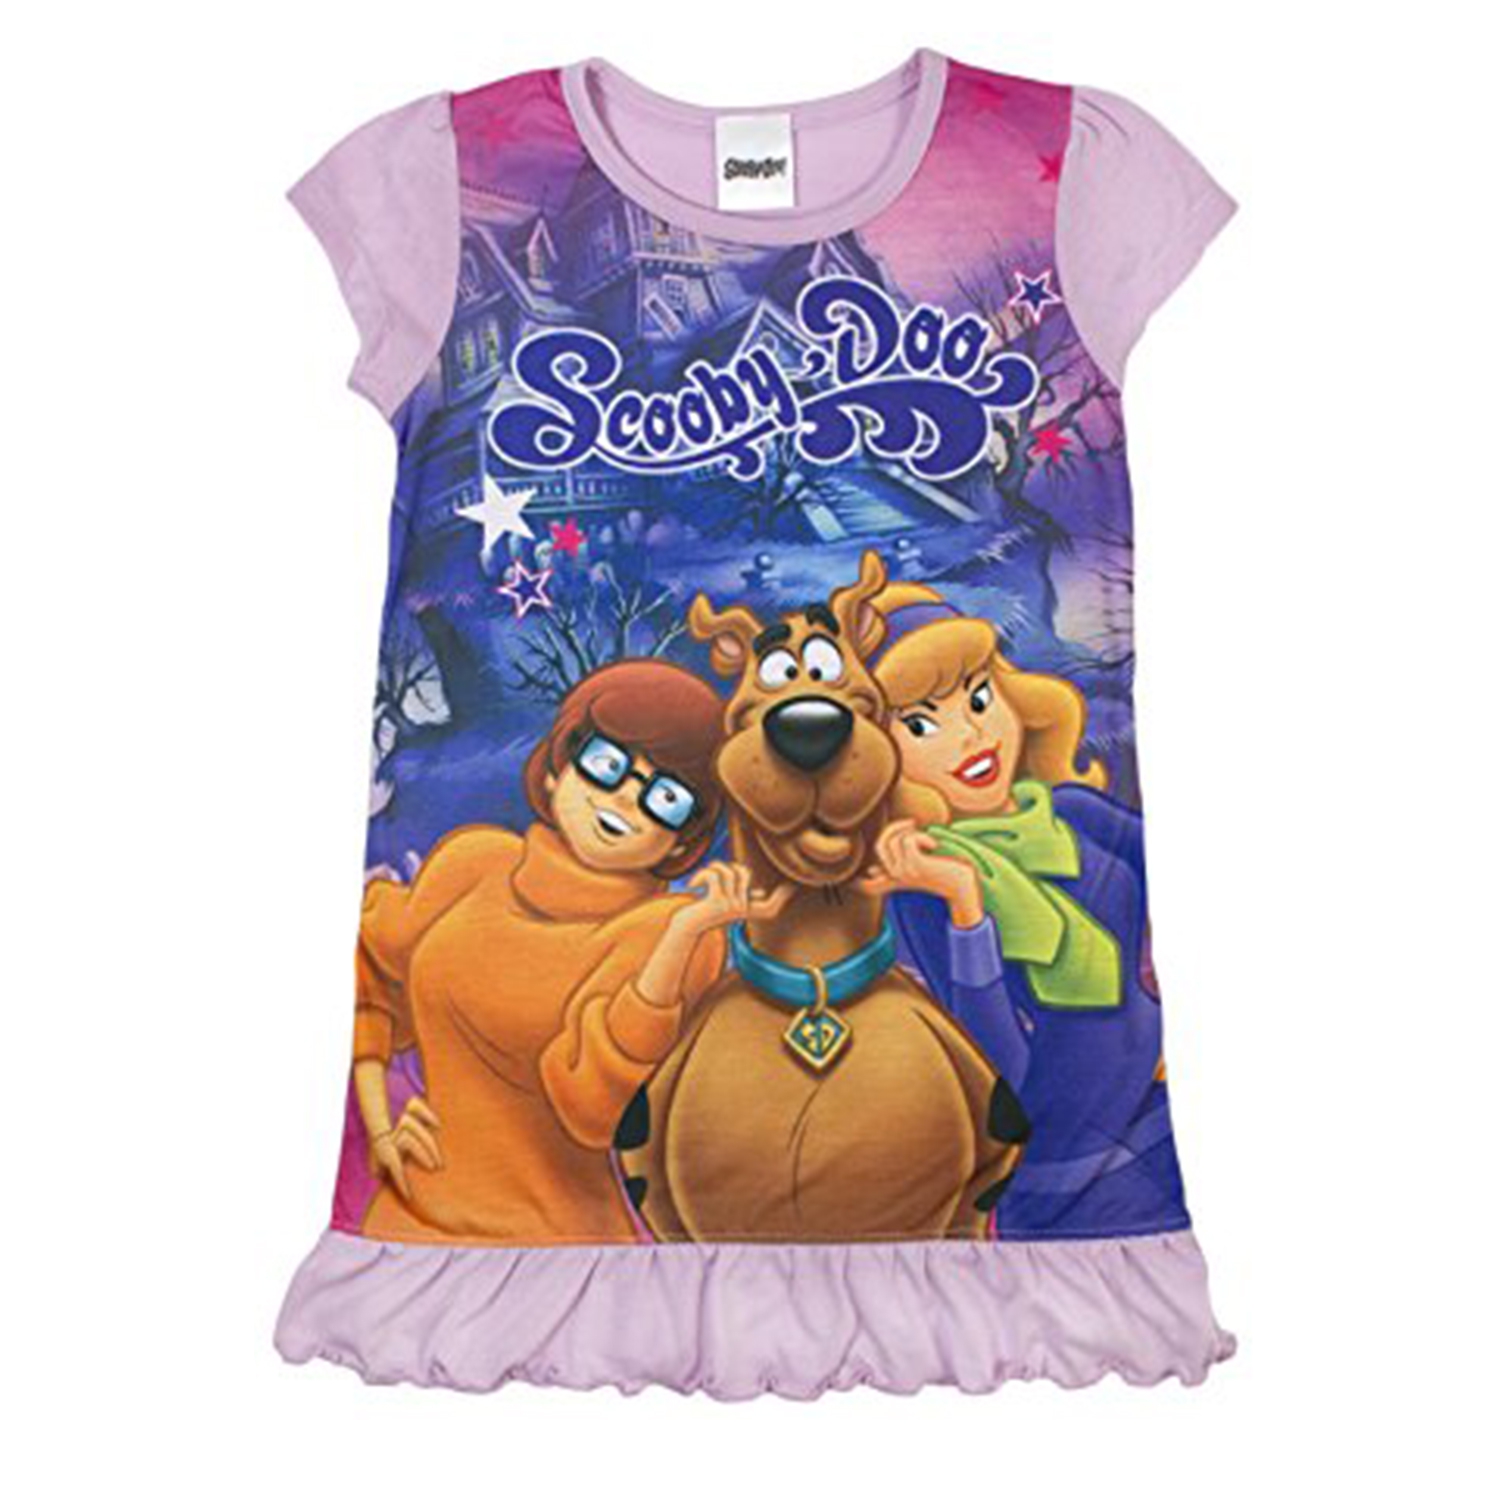 Scooby Doo 'Girls' Nightie 5 6 Years